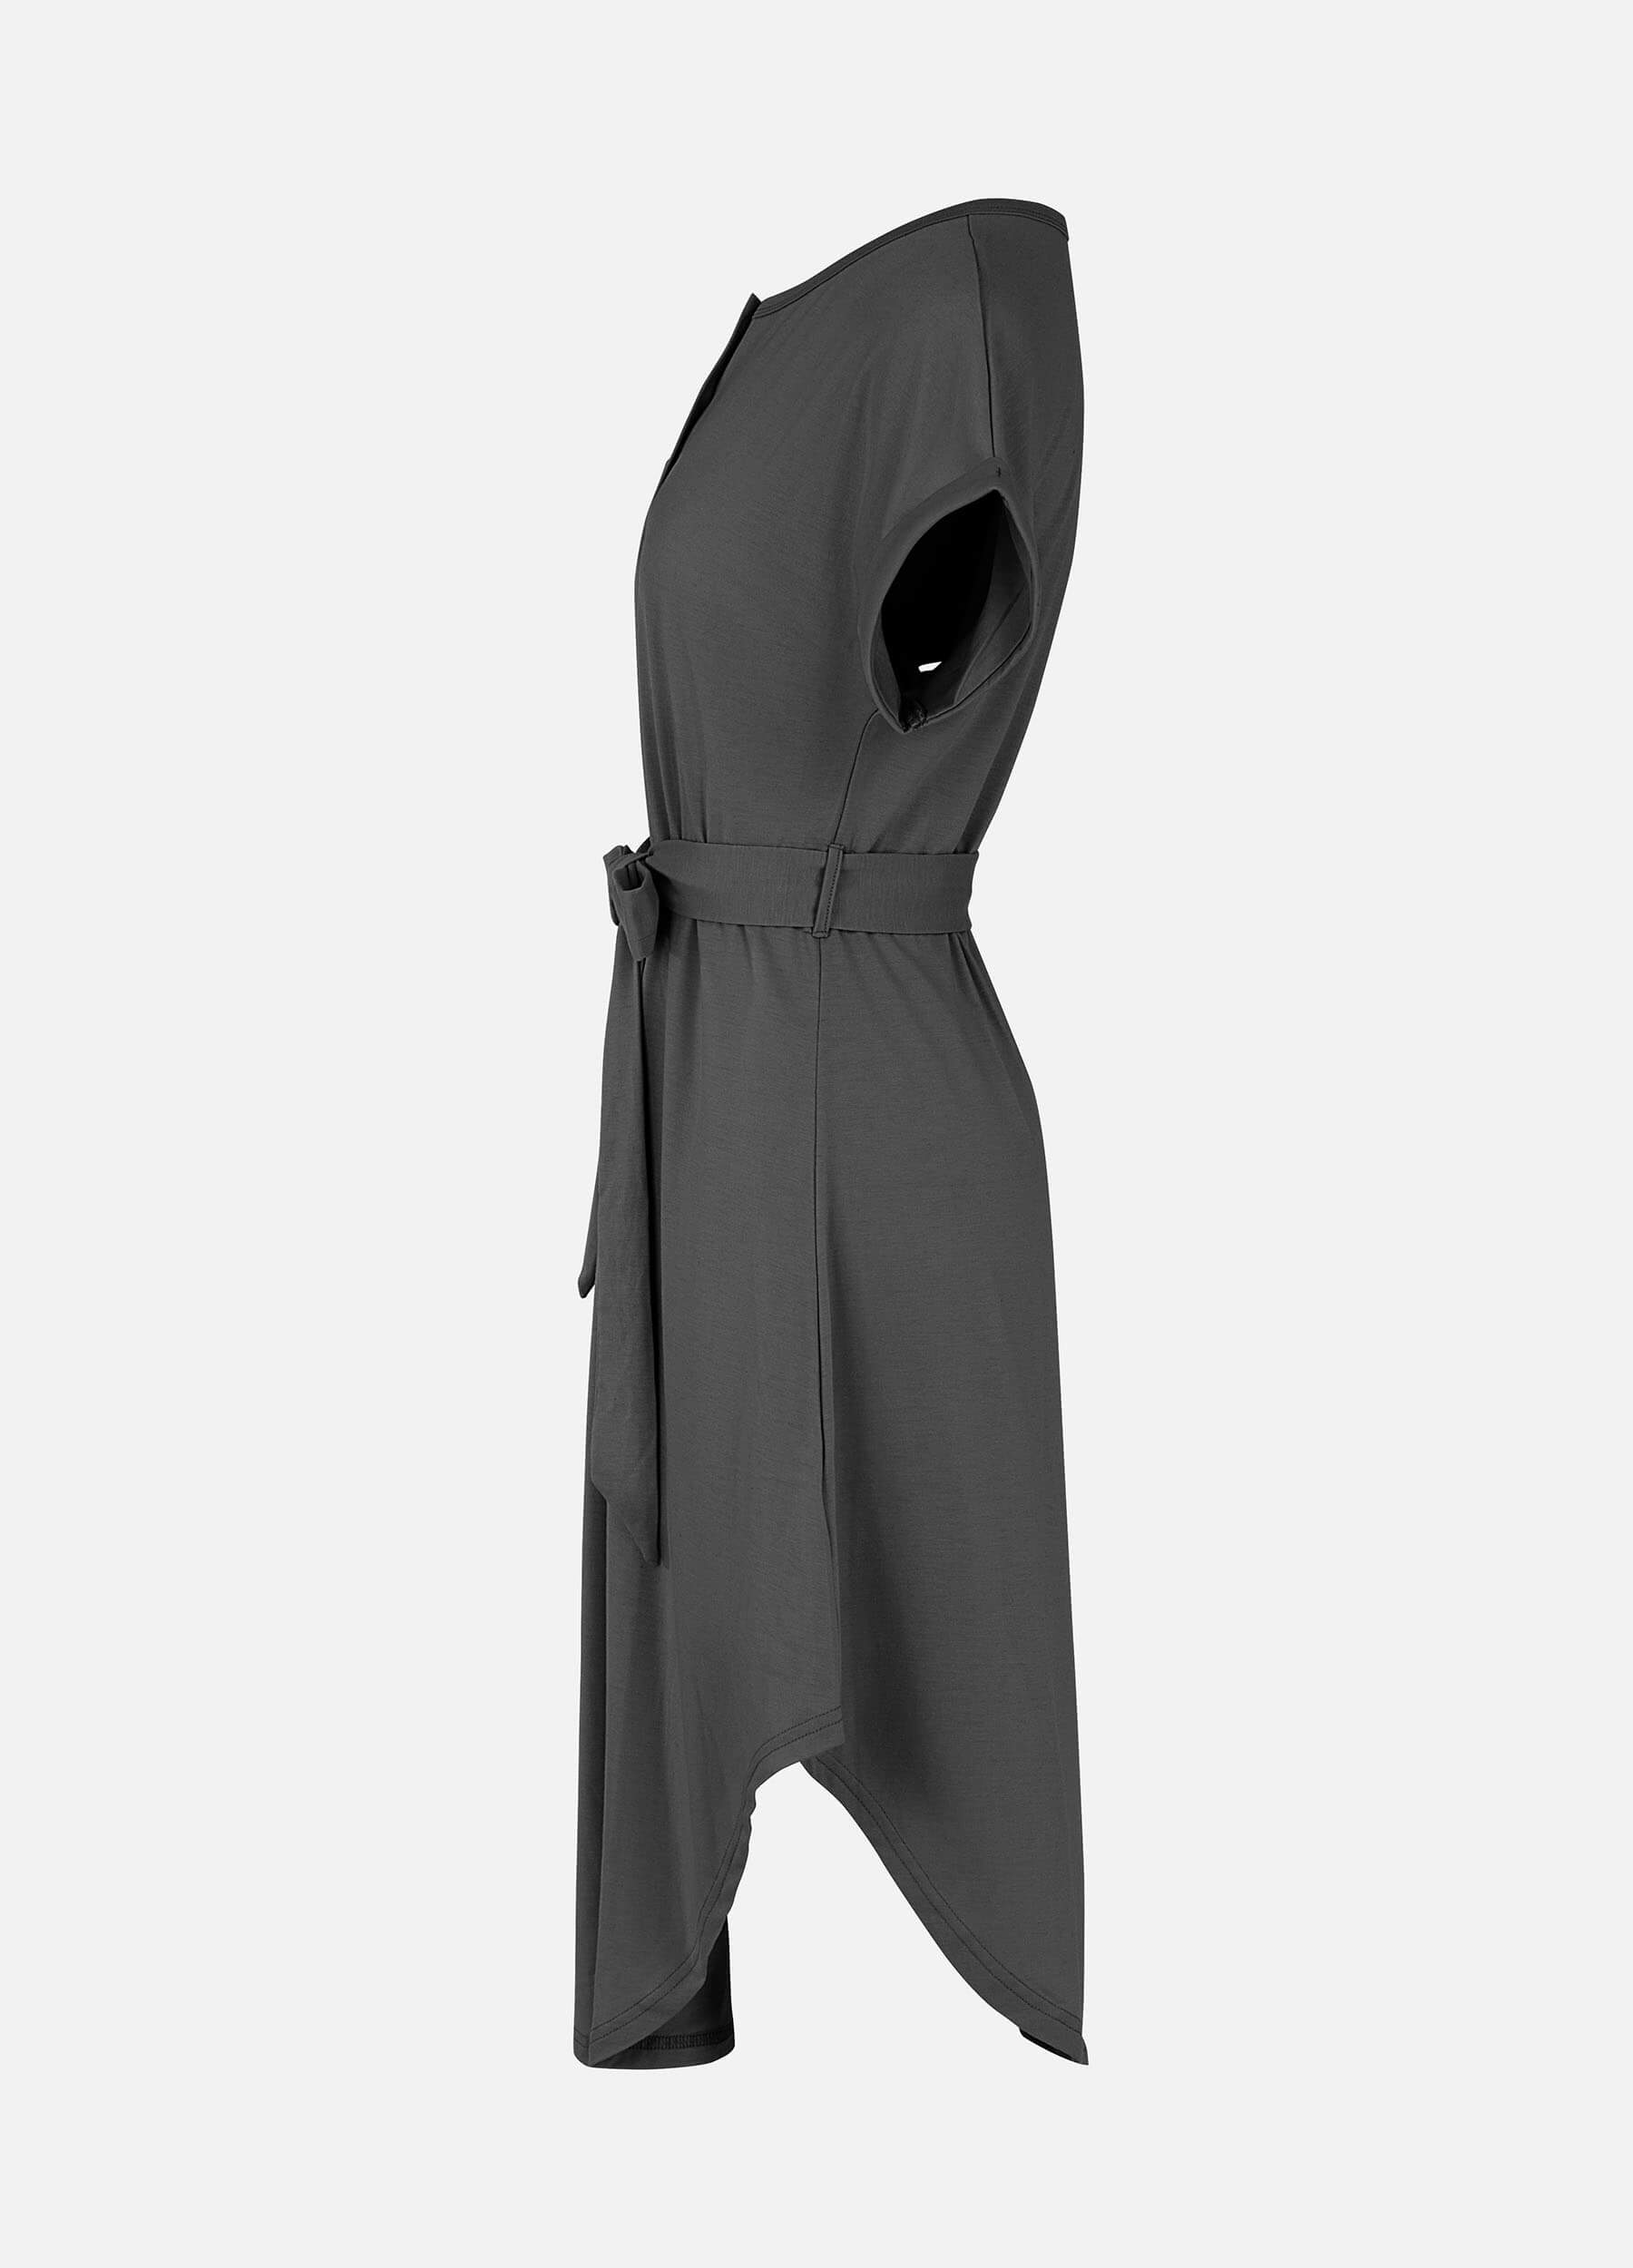 MECALA Women's Short Sleeve Henley Neck High Low Hem Plain Casual Dress With Belt